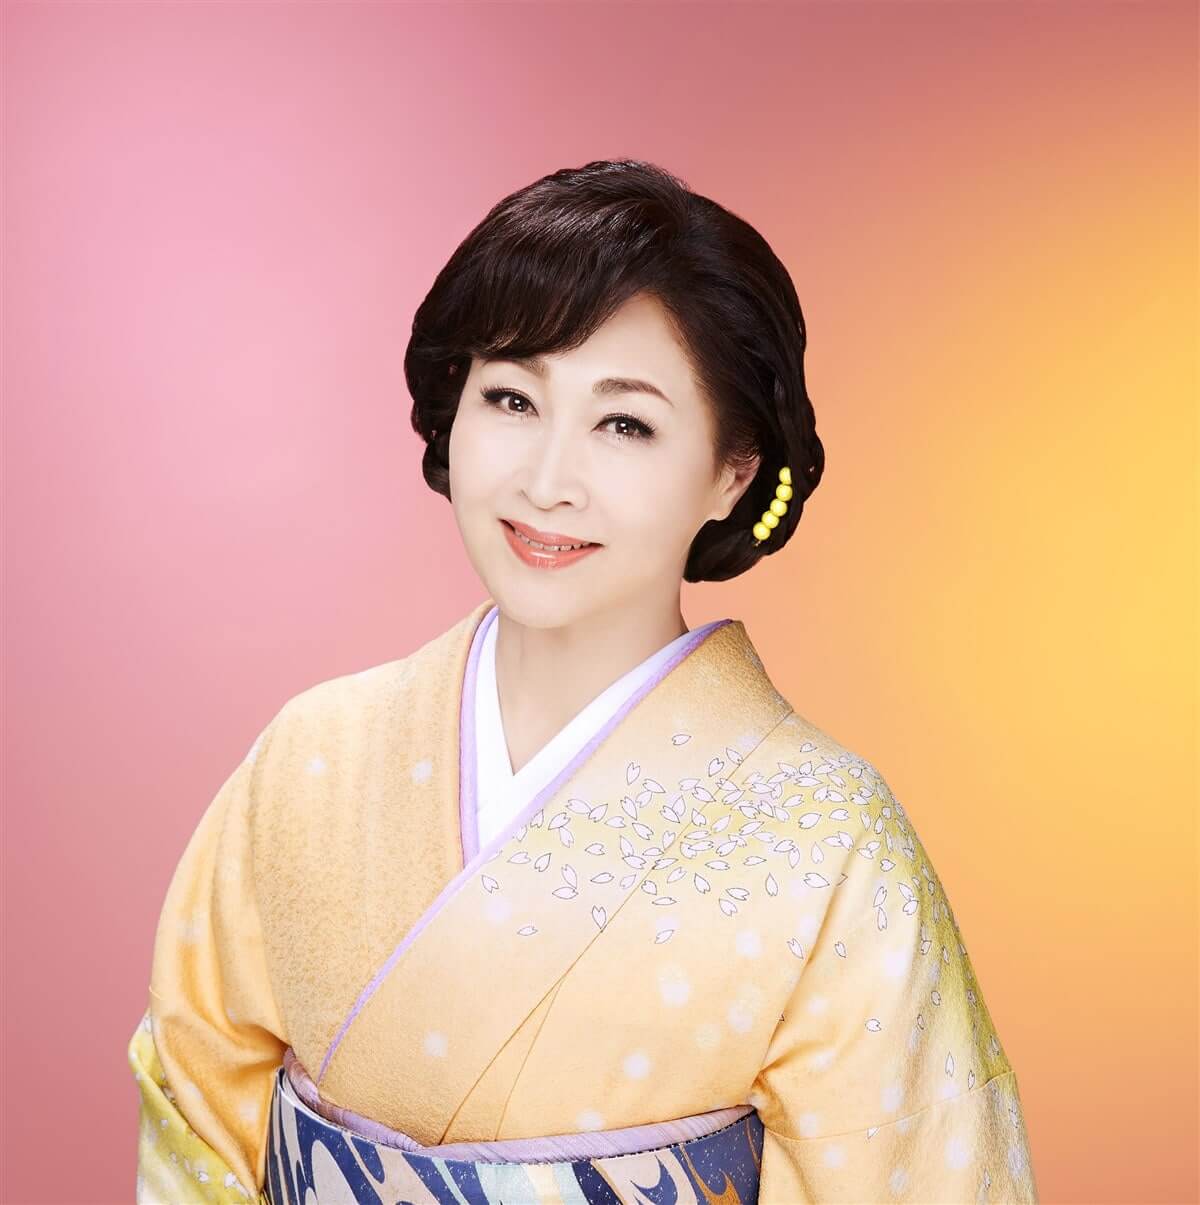 3月19日(日)のゲストは島津悦子さん 「仁科美咲の遊々ミュージック」 | 文化放送